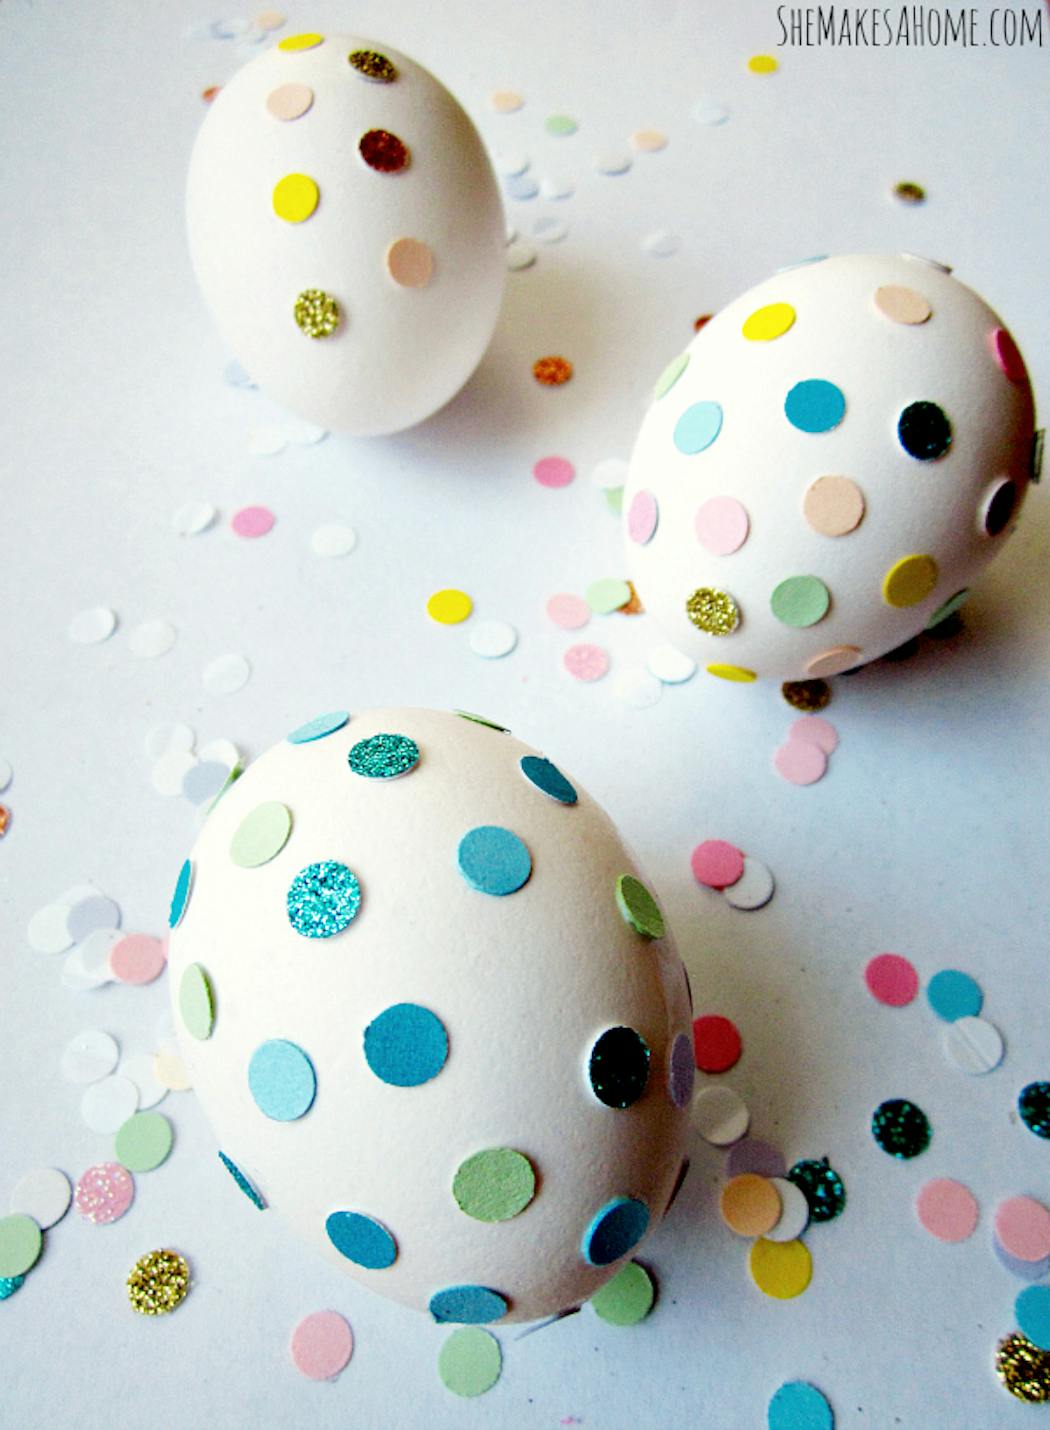 Tatouages pour décoration d'œufs de Pâques